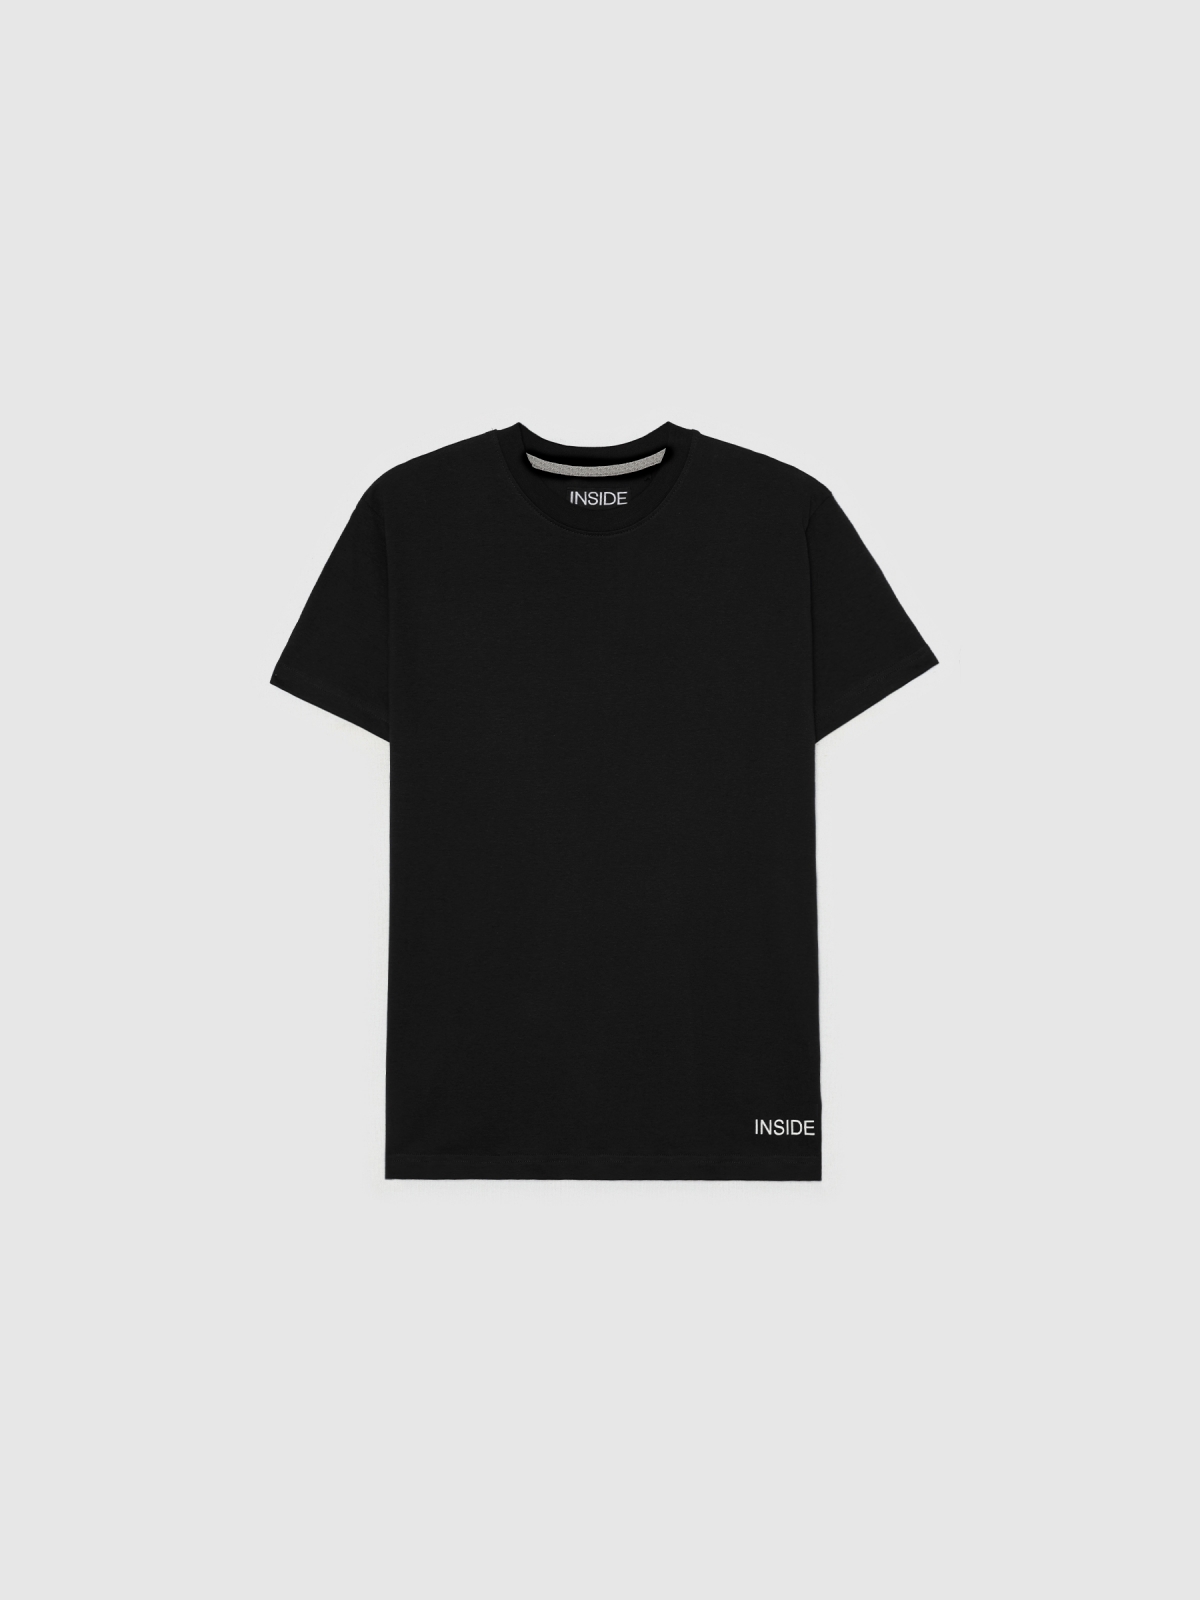  T-shirt básica de manga curta preto